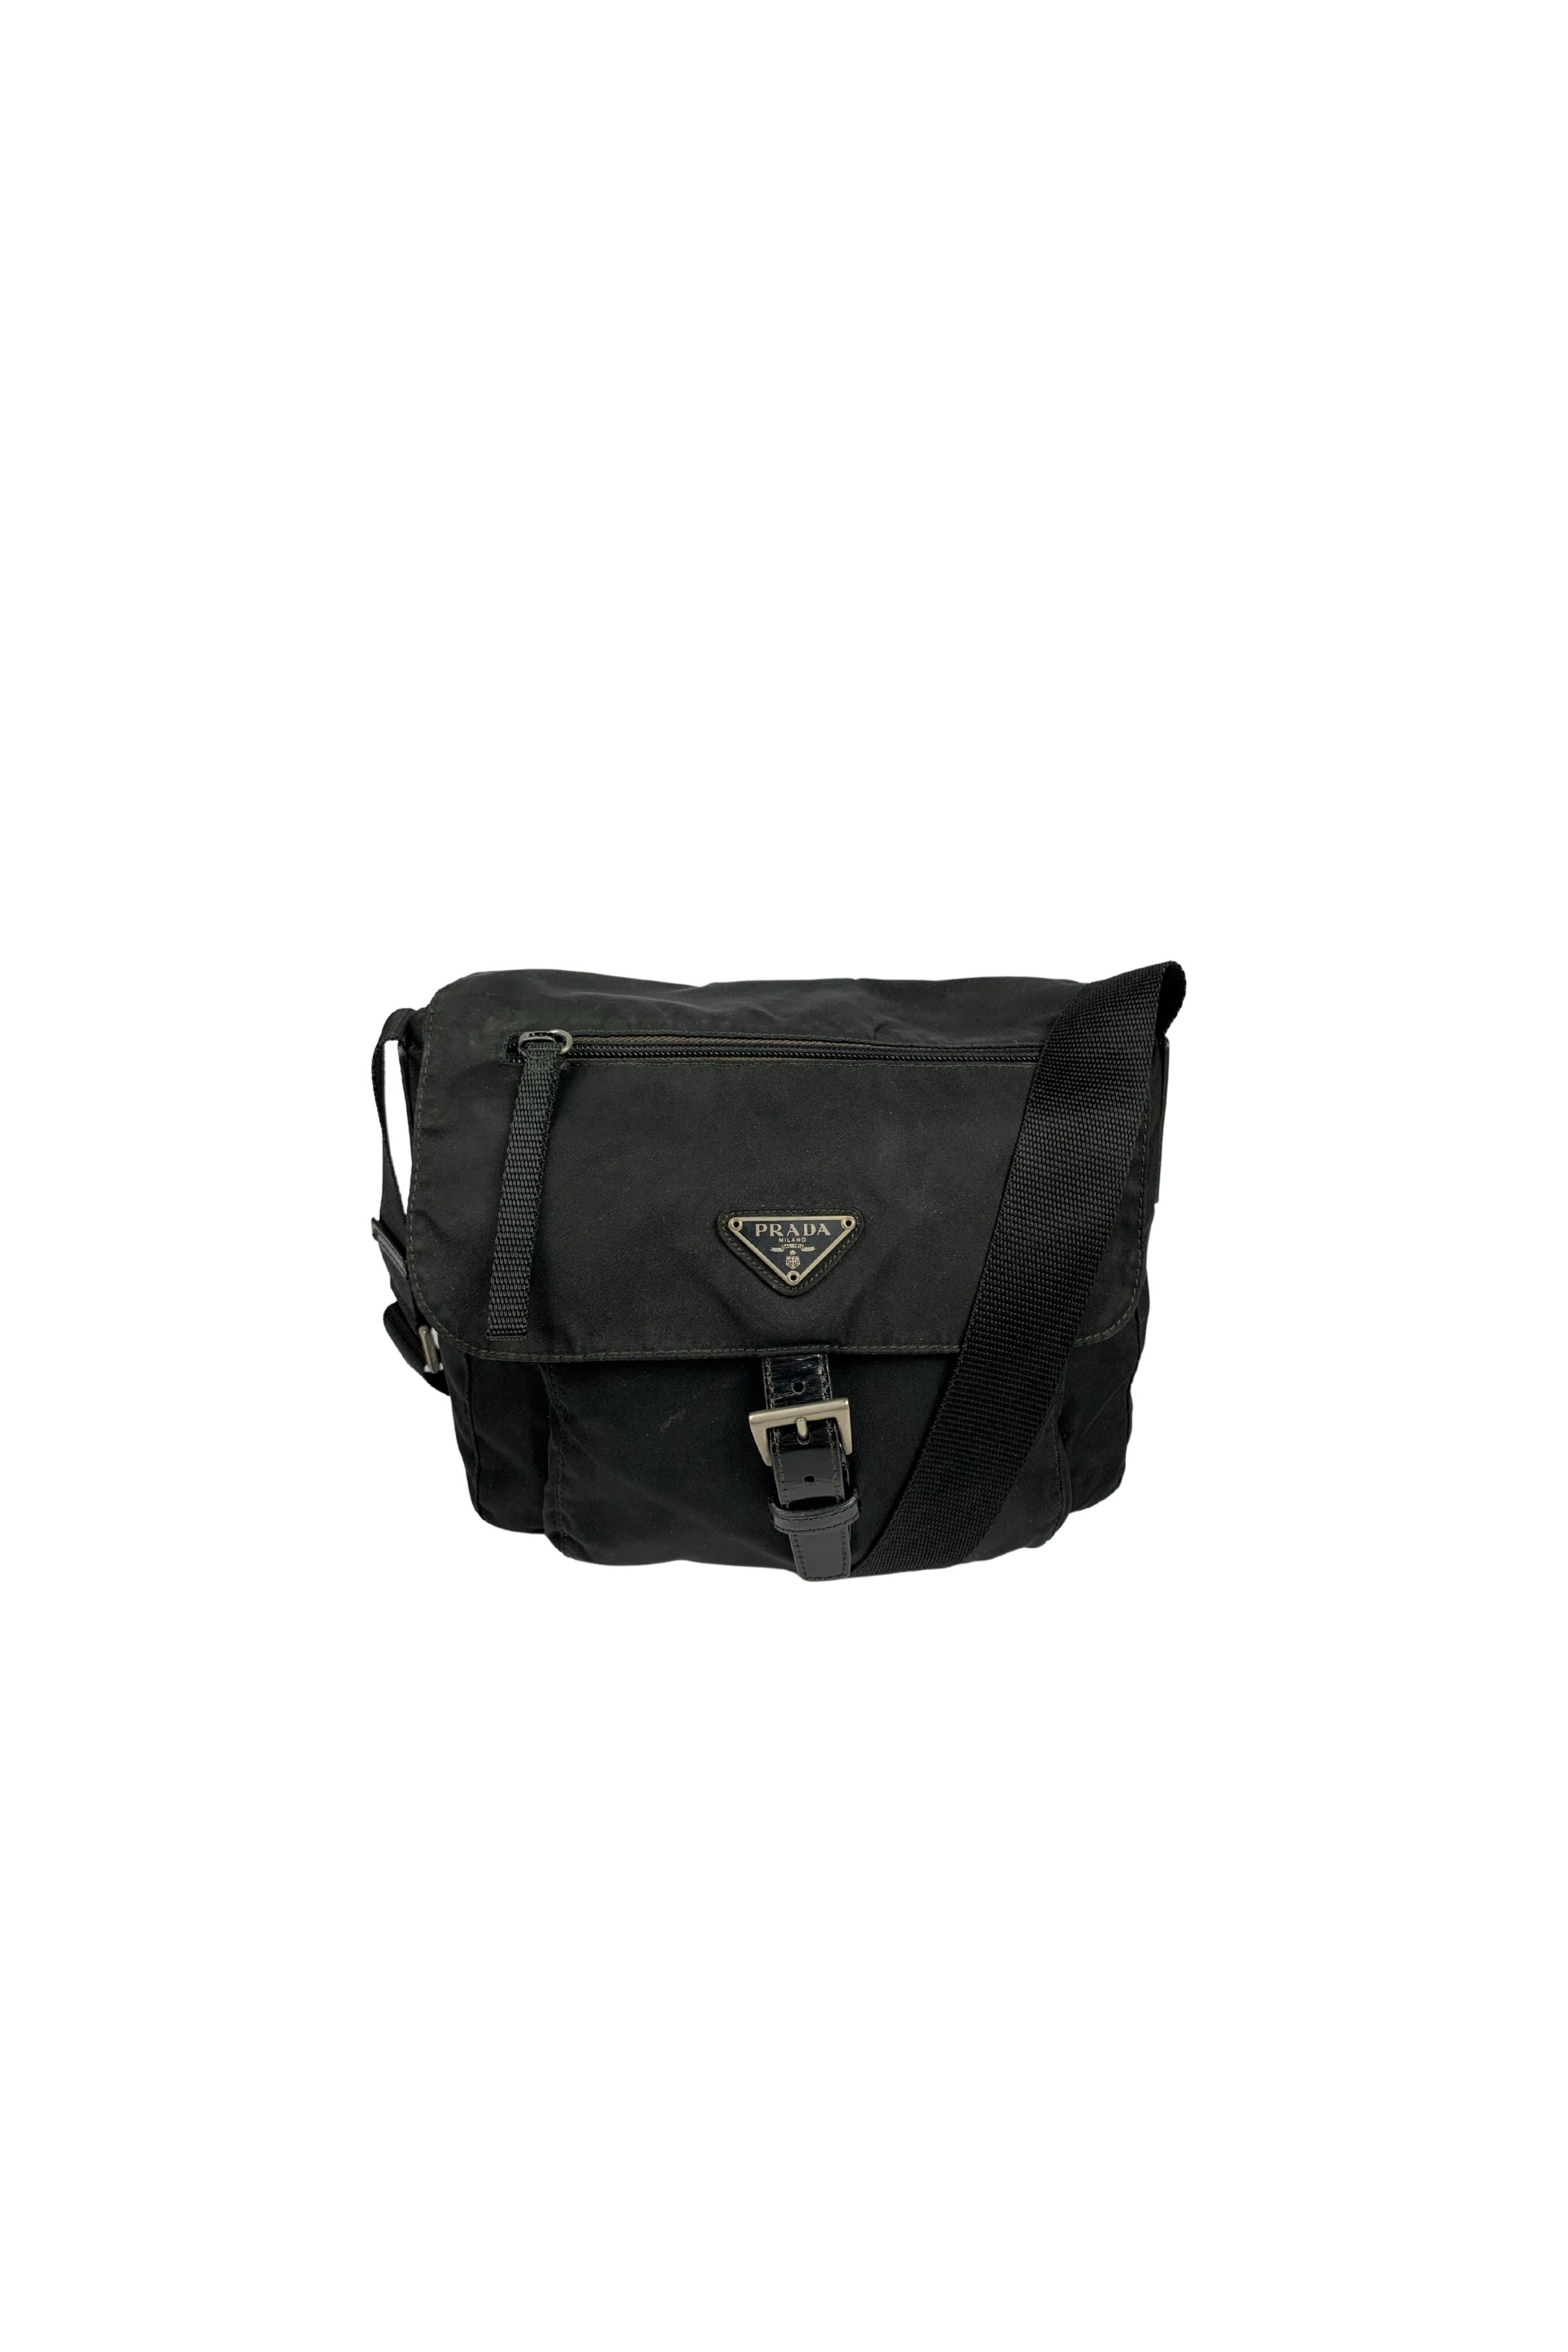 Prada Black Saffiano Tessuto Black Shoulder Crossbody Bag